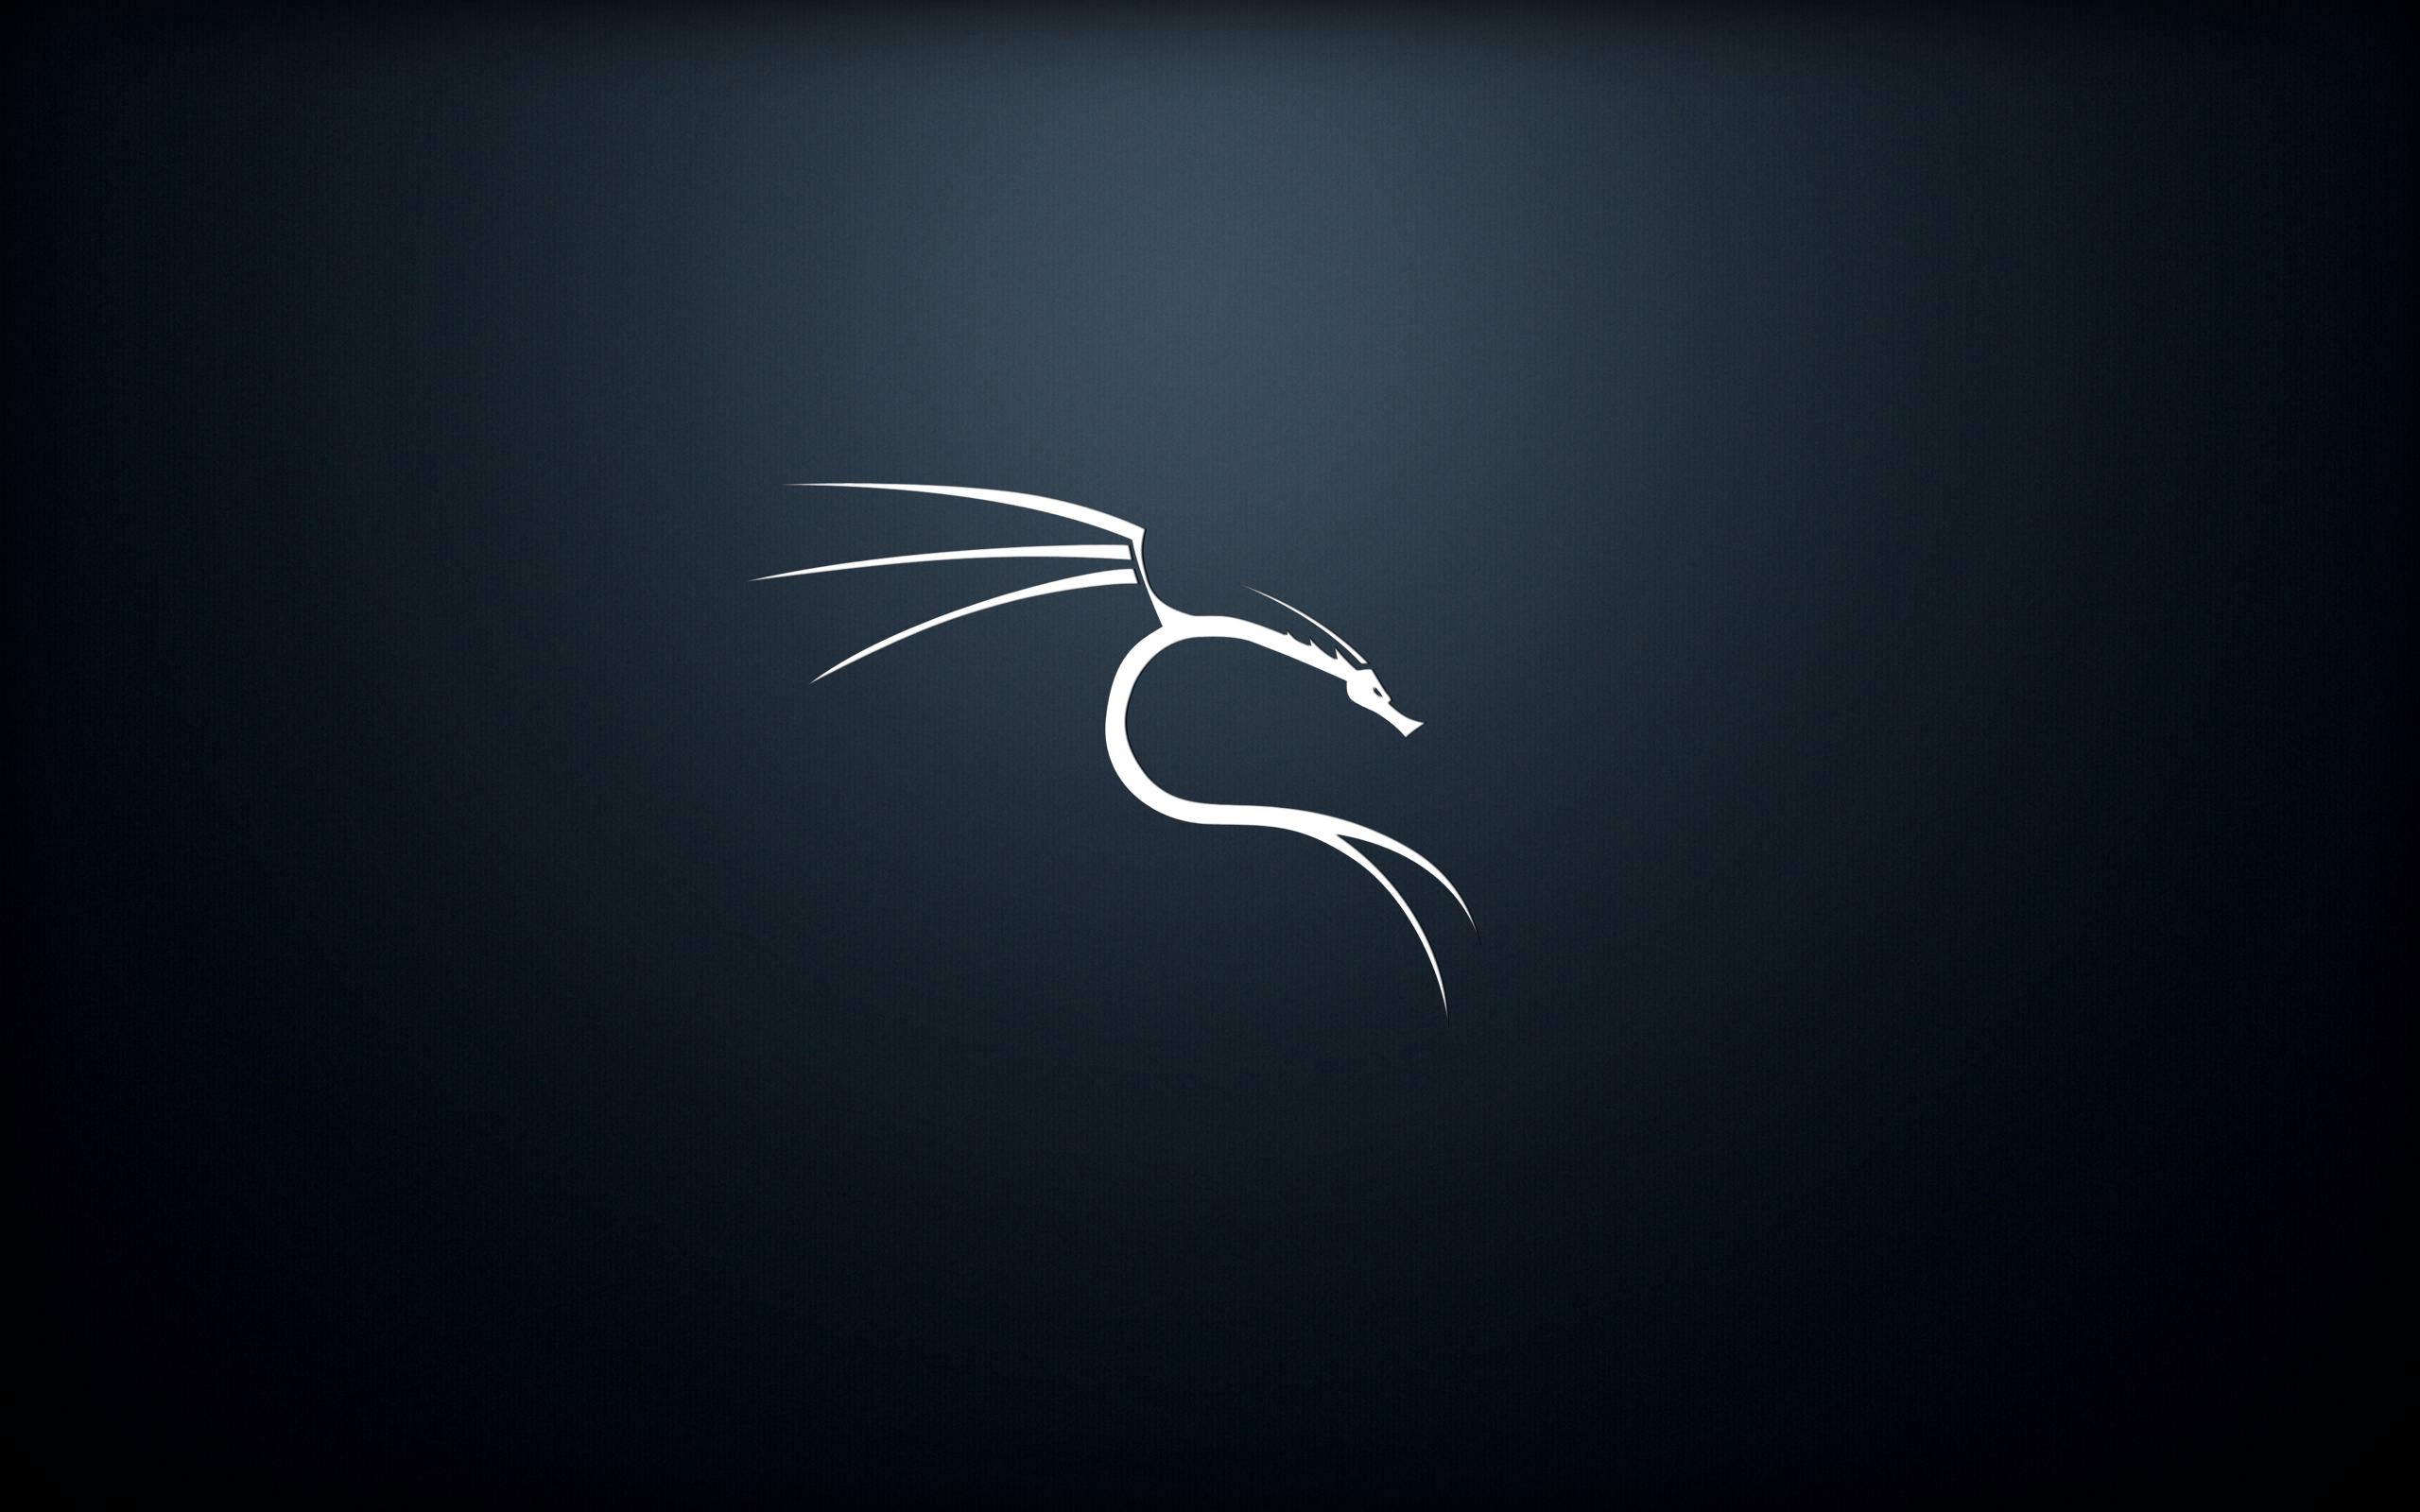 github desktop for linux